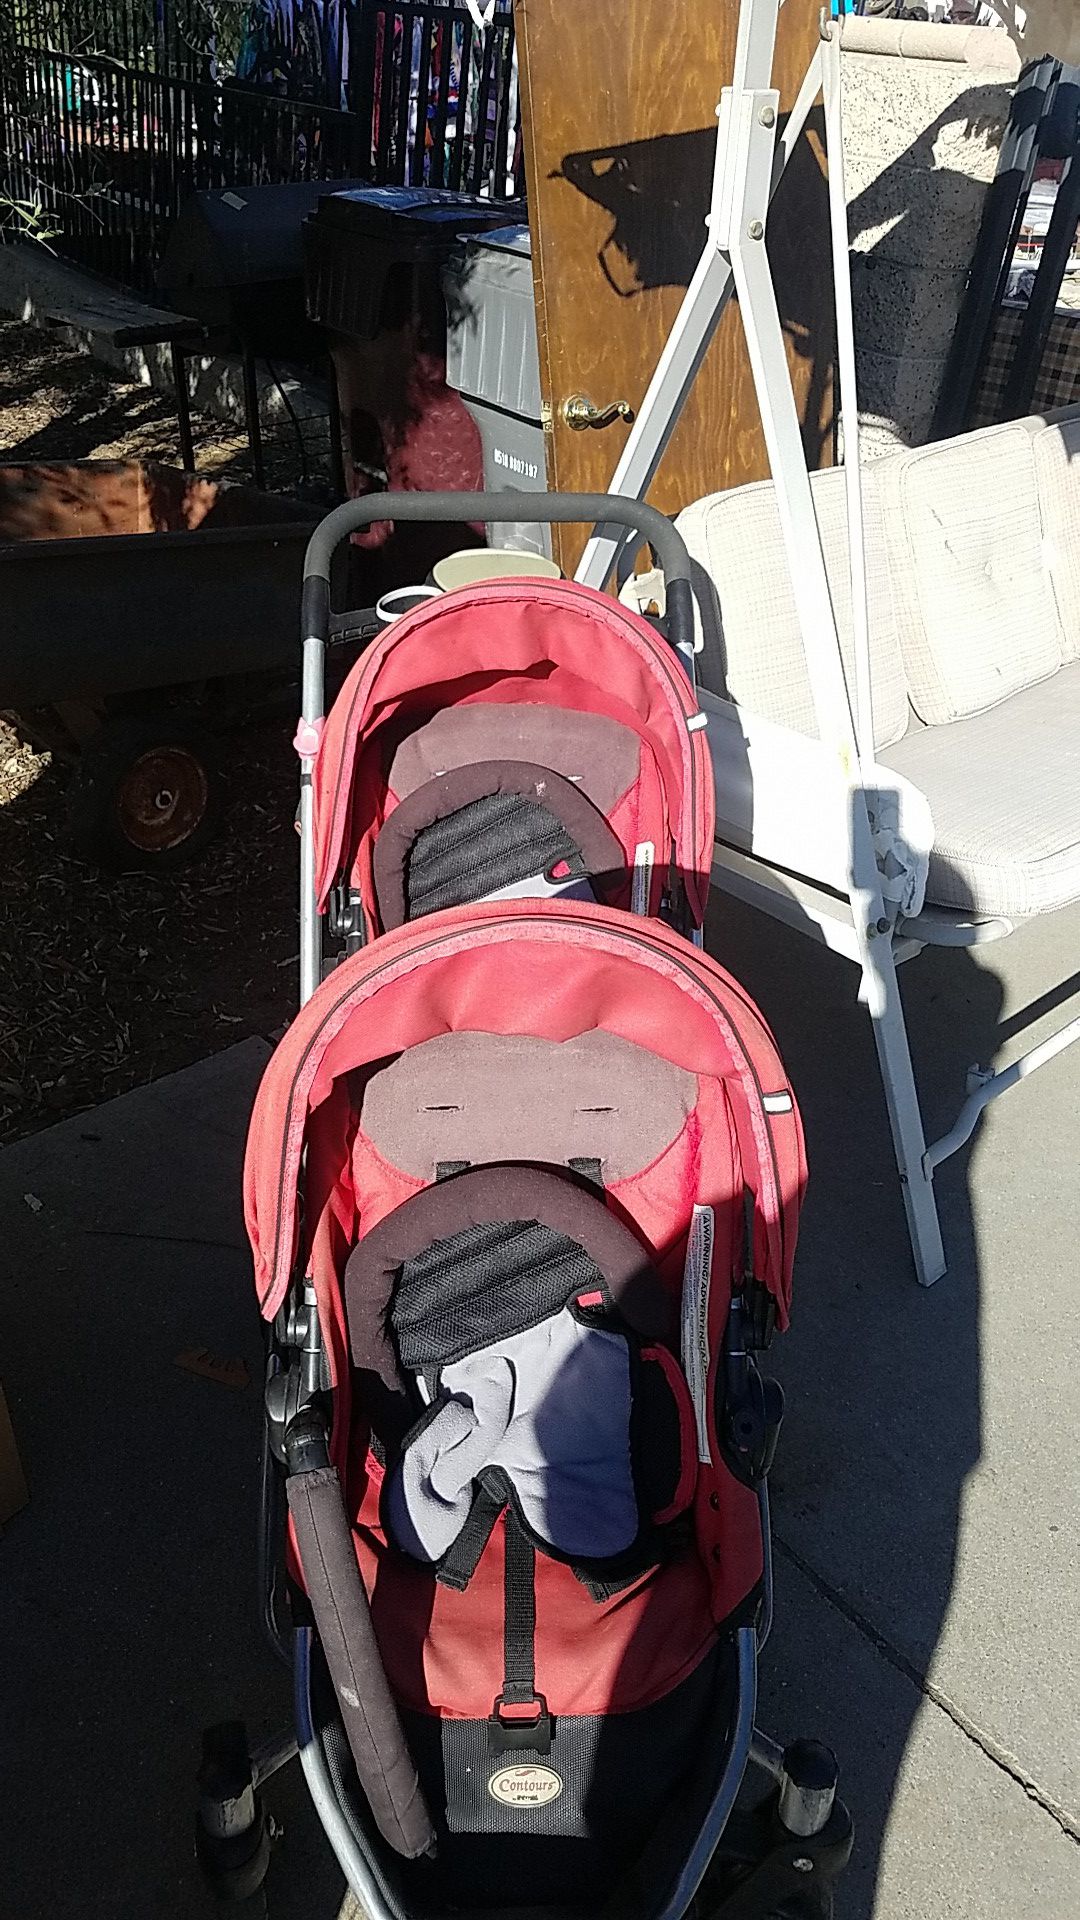 Countors Double stroller kids baby